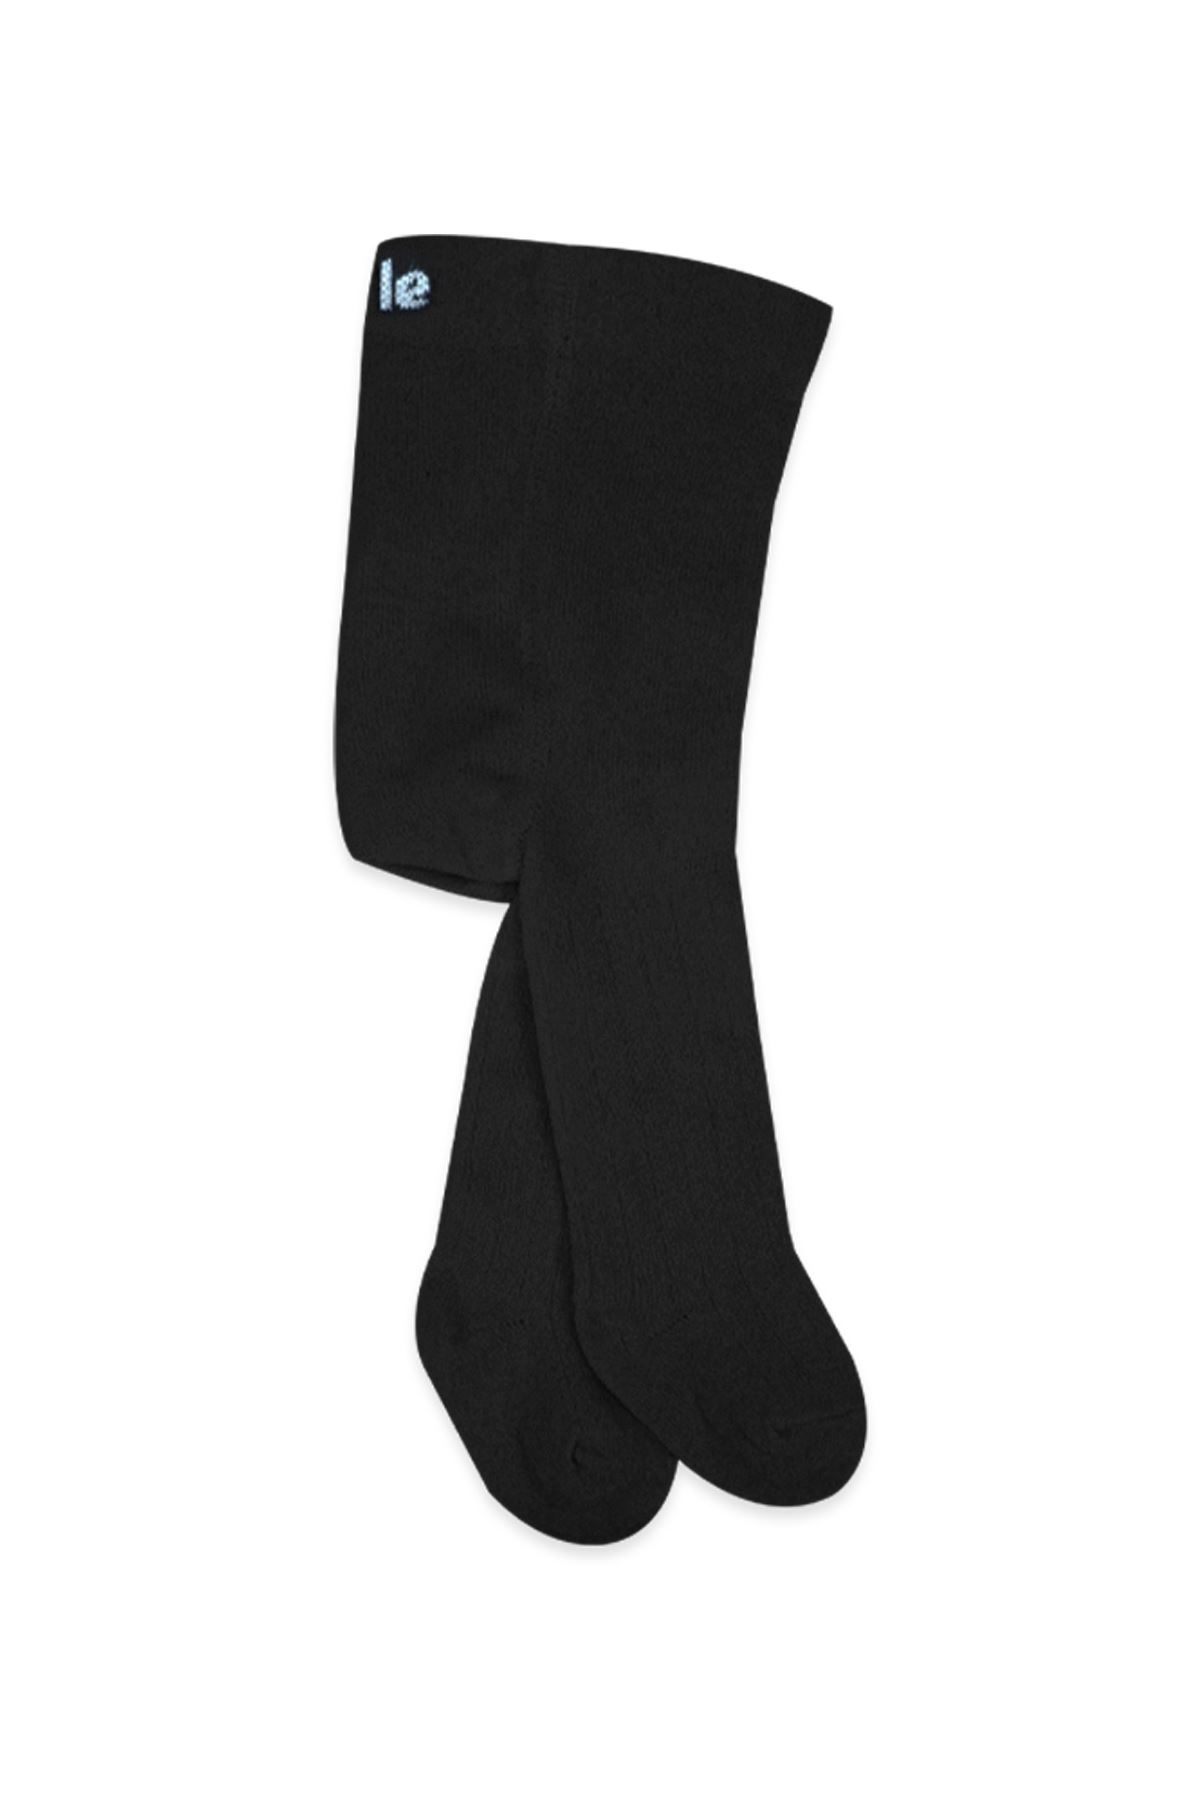 Bistyle Basic Penye Tekli Külotlu Çorap BS1000 Siyah